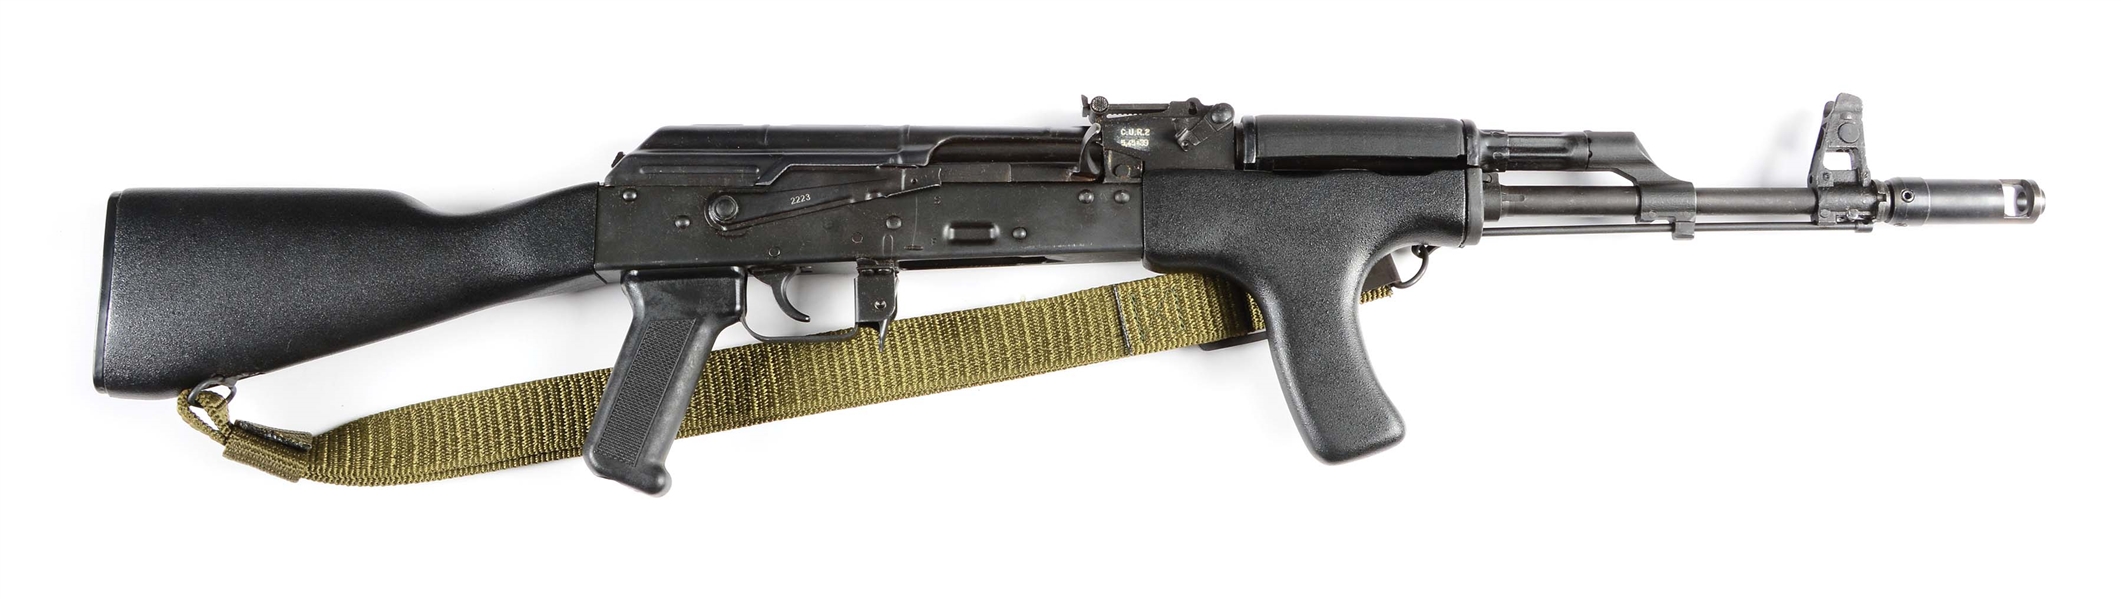 (M) ROMANIAN AK-74 SEMI-AUTOMATIC RIFLE